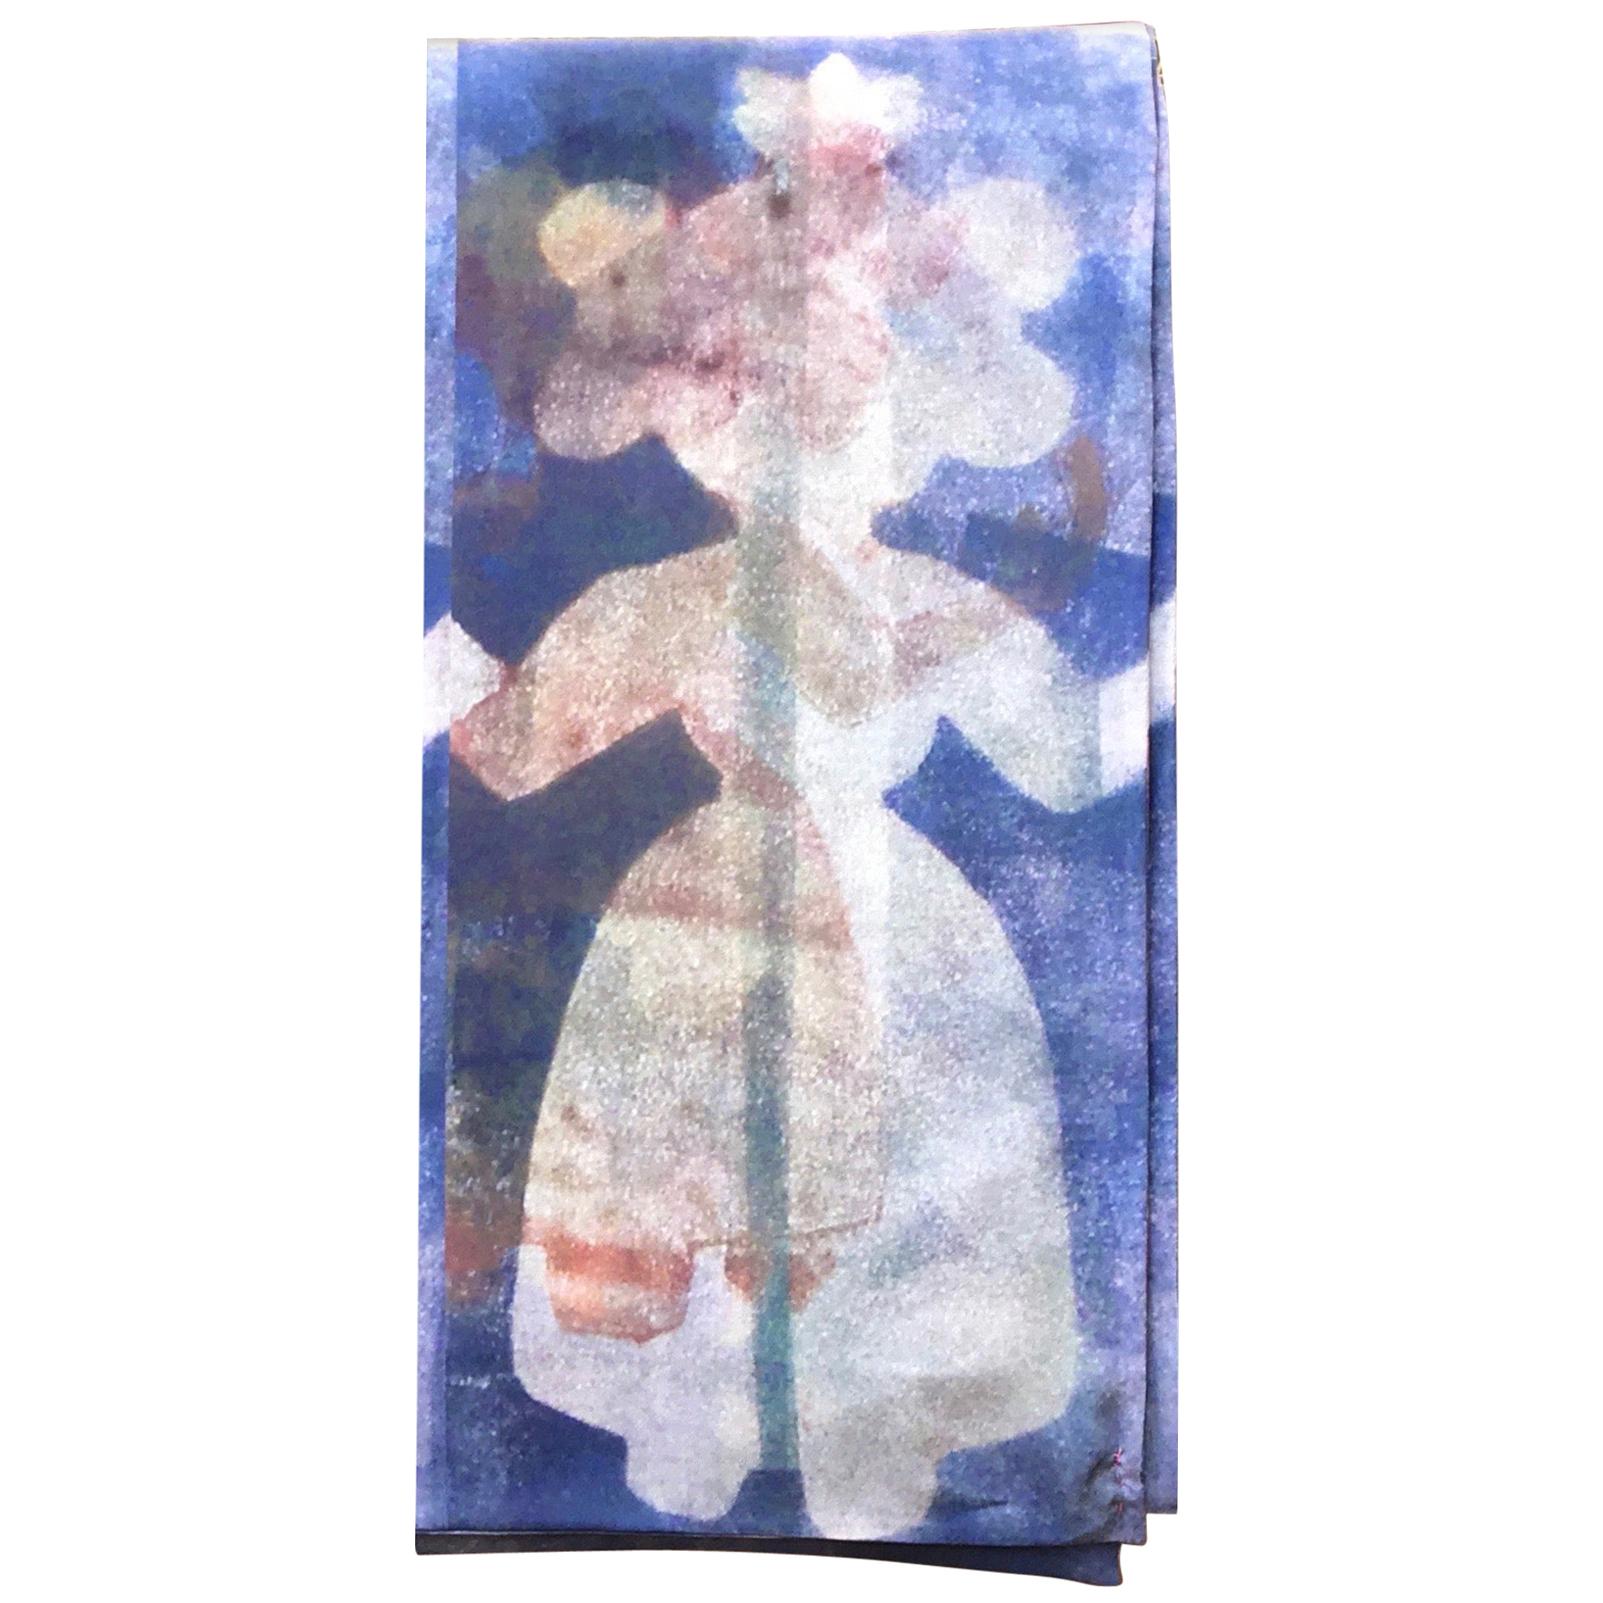 She Stands With Me, conçue par Melanie Yazzie, écharpe, art portable, bleu, blanc